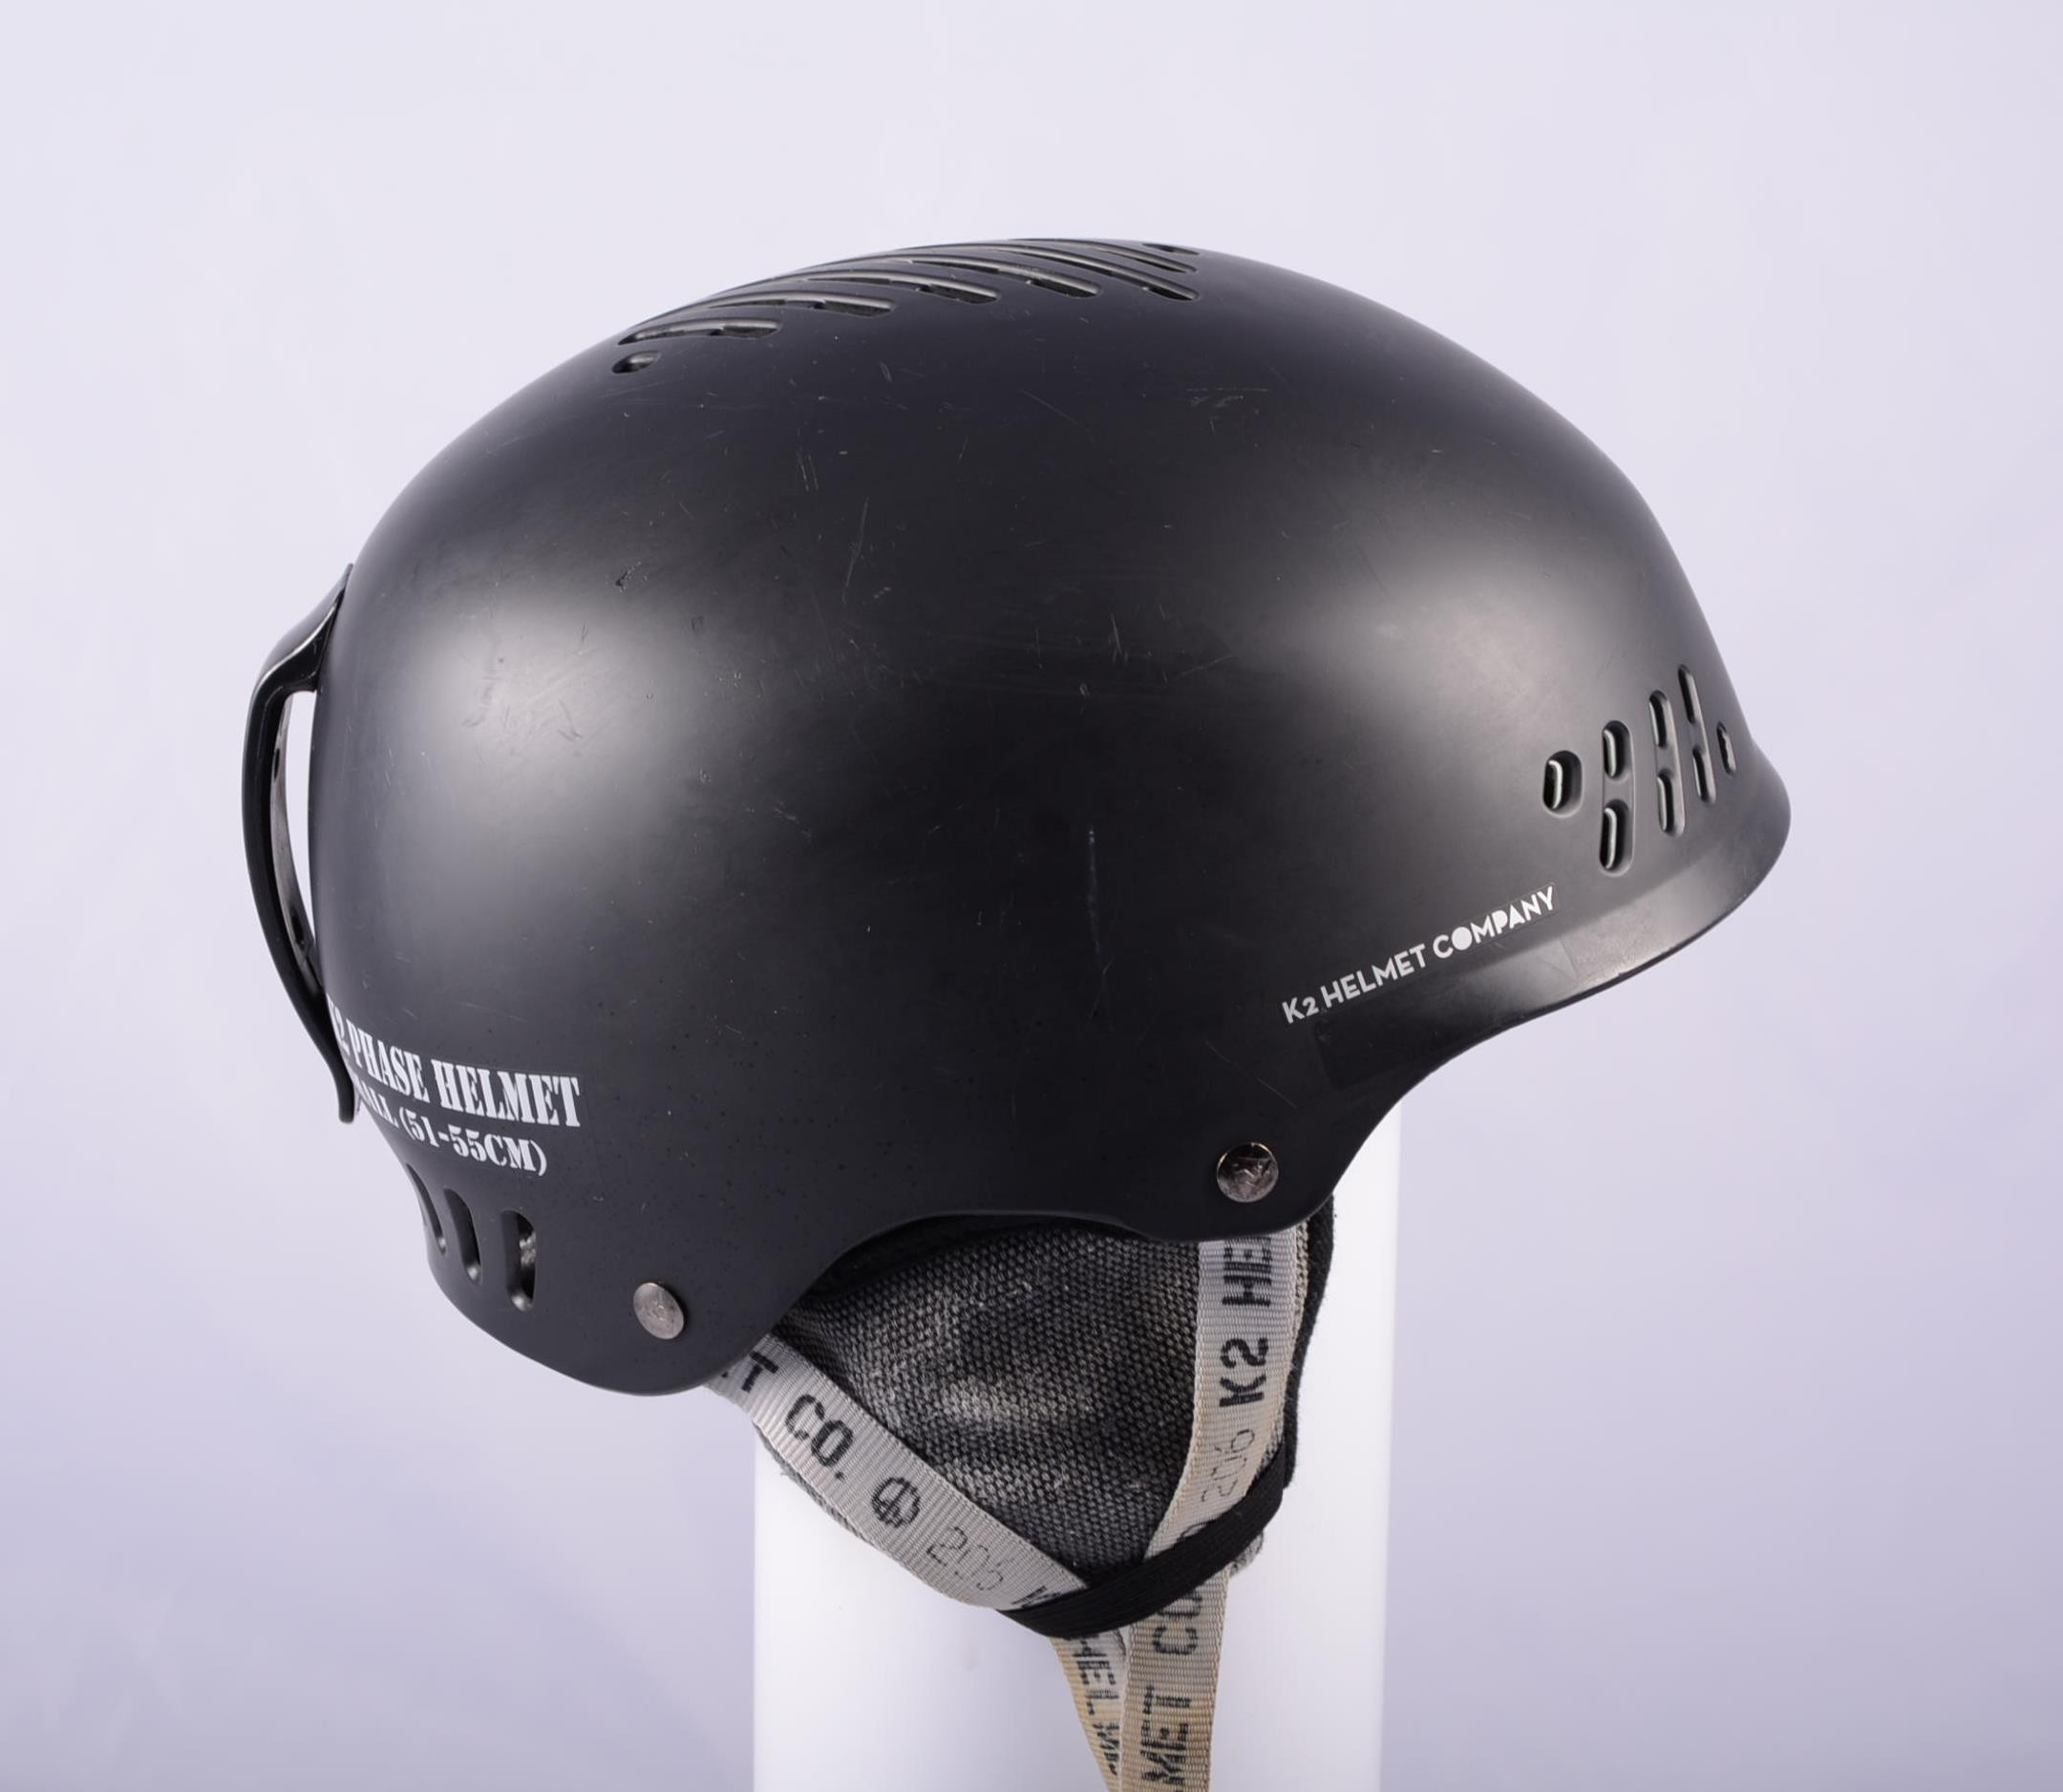 Met opzet Gewoon overlopen In de genade van ski/snowboard helmet K2 PHASE, BLACK/grey, adjustable ( TOP condition ) -  Mardosport.com